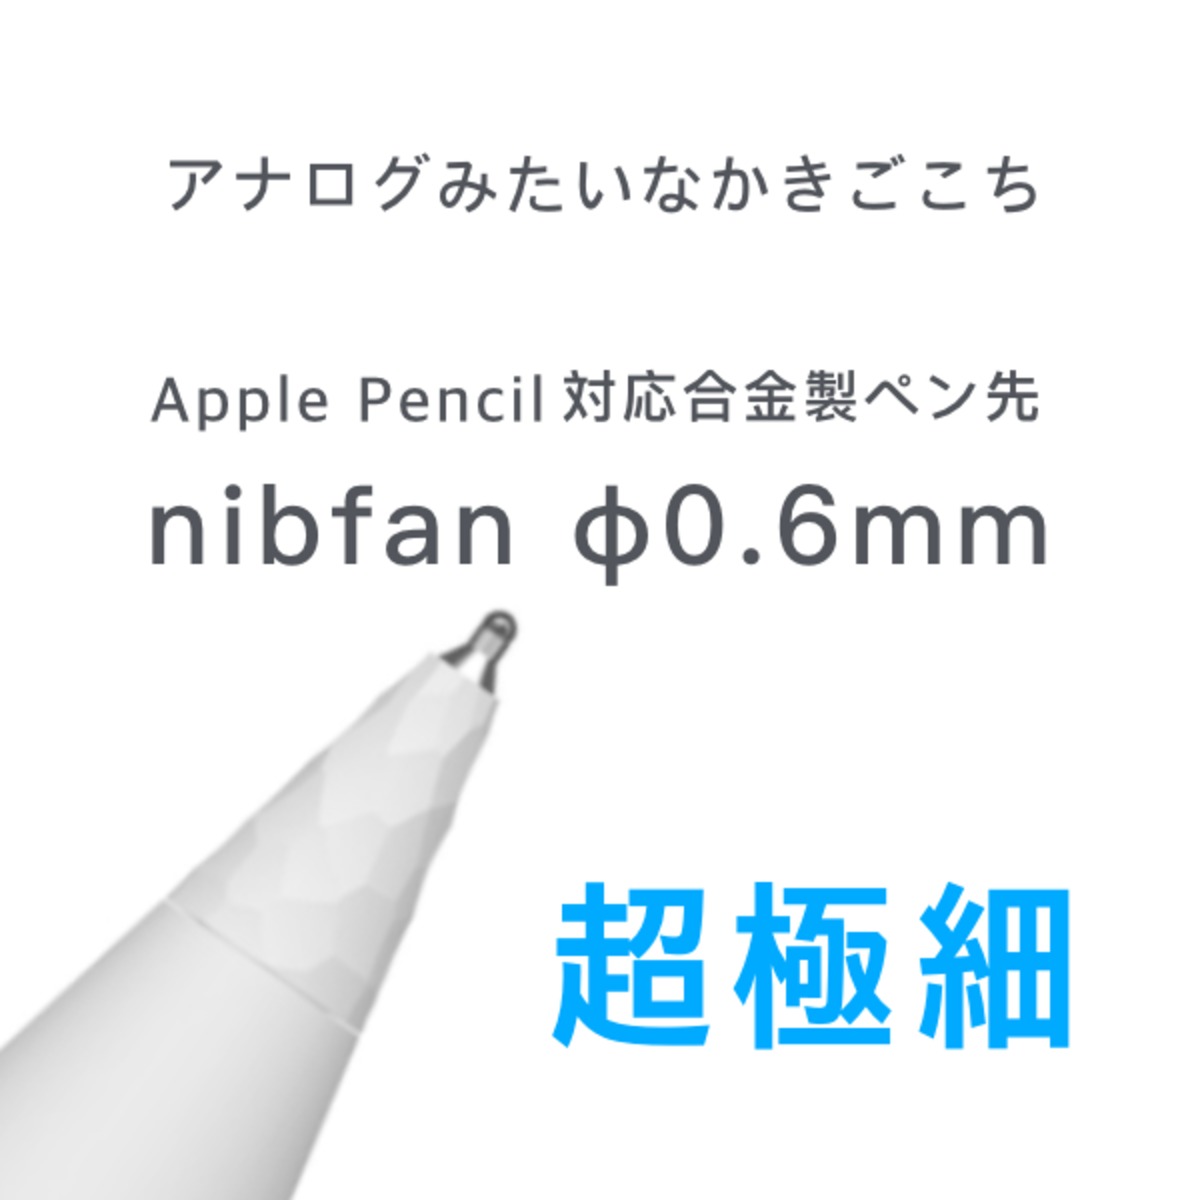 nibfan 超極細 φ0.6mm Apple Pencil 対応　合金製極細ペン先 | everest powered by BASE